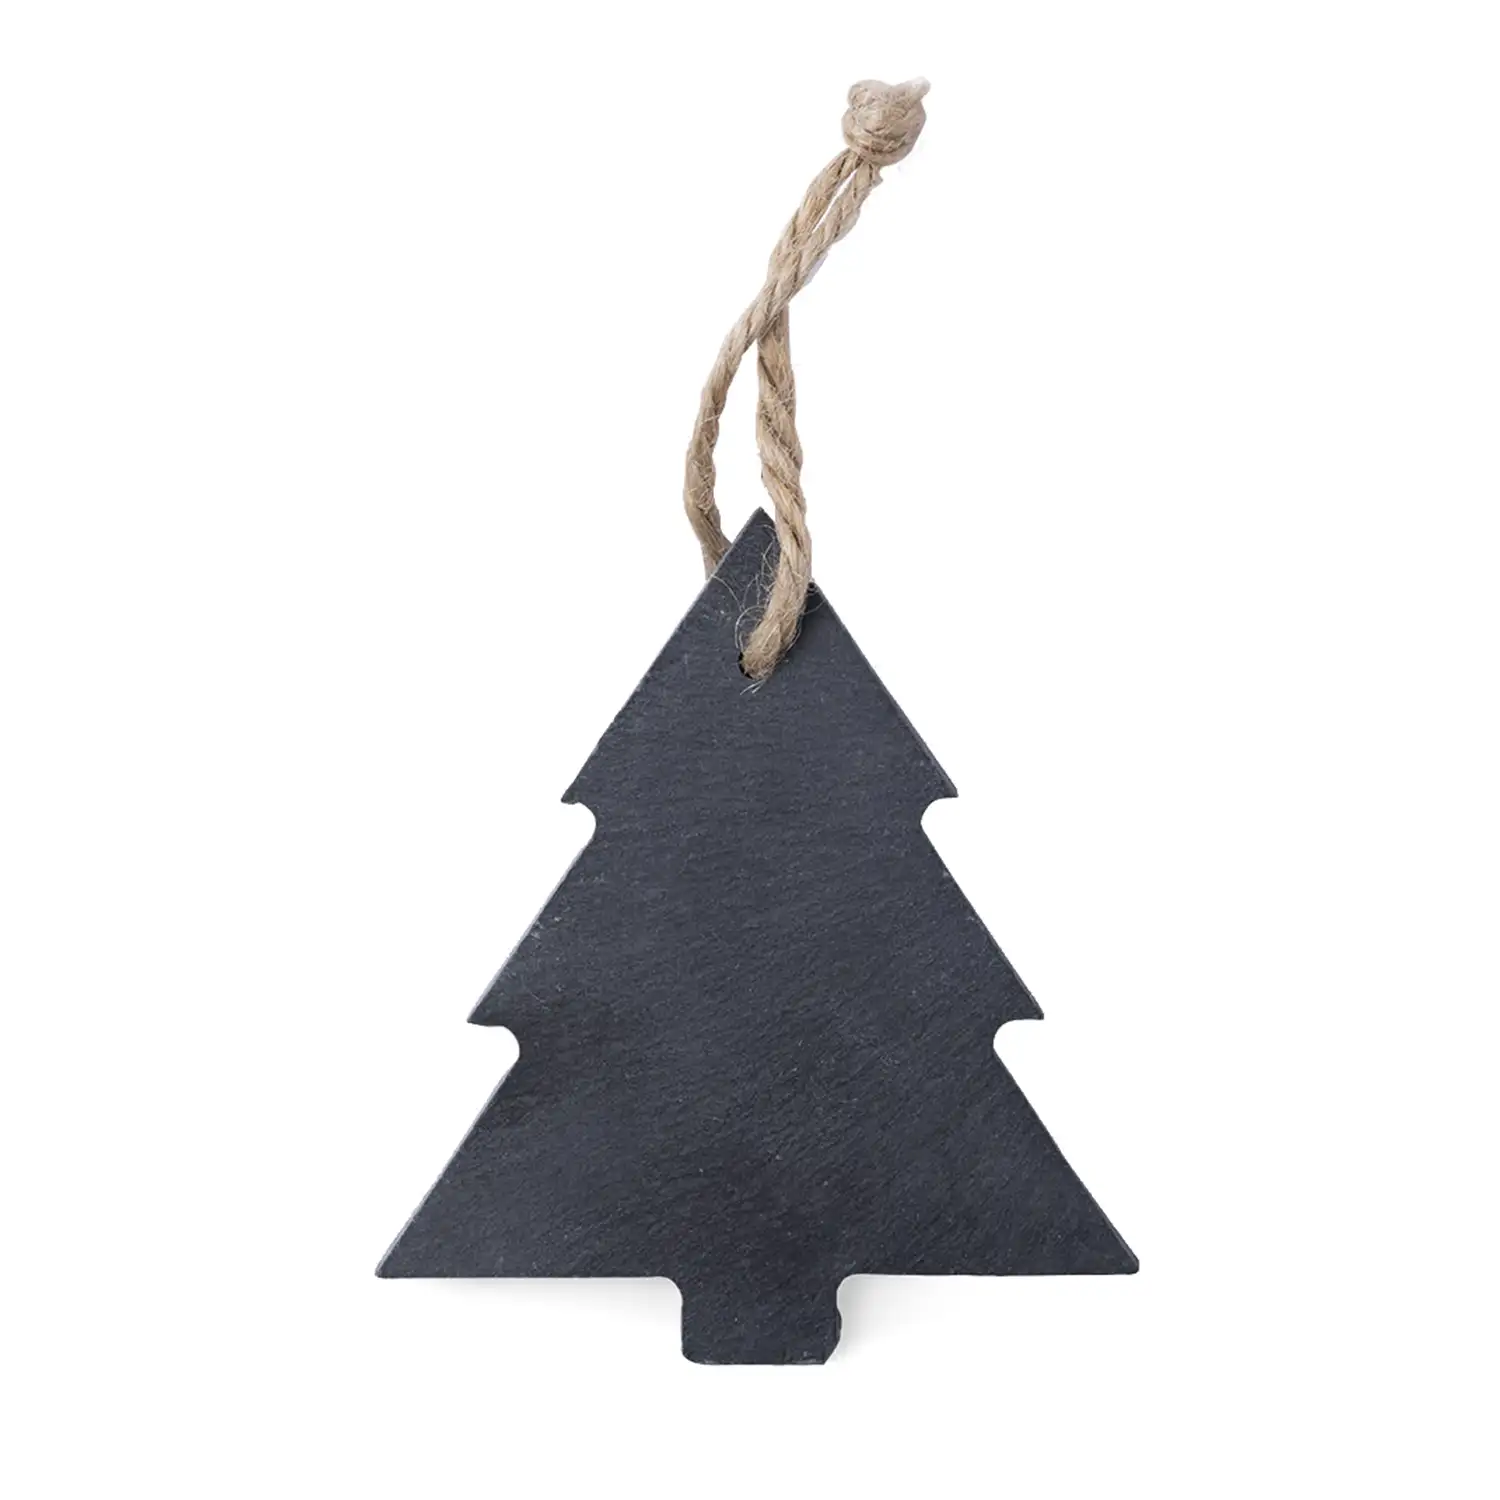 Adorno navideño en pizarra, con lacito para colgar. Diseño árbol.